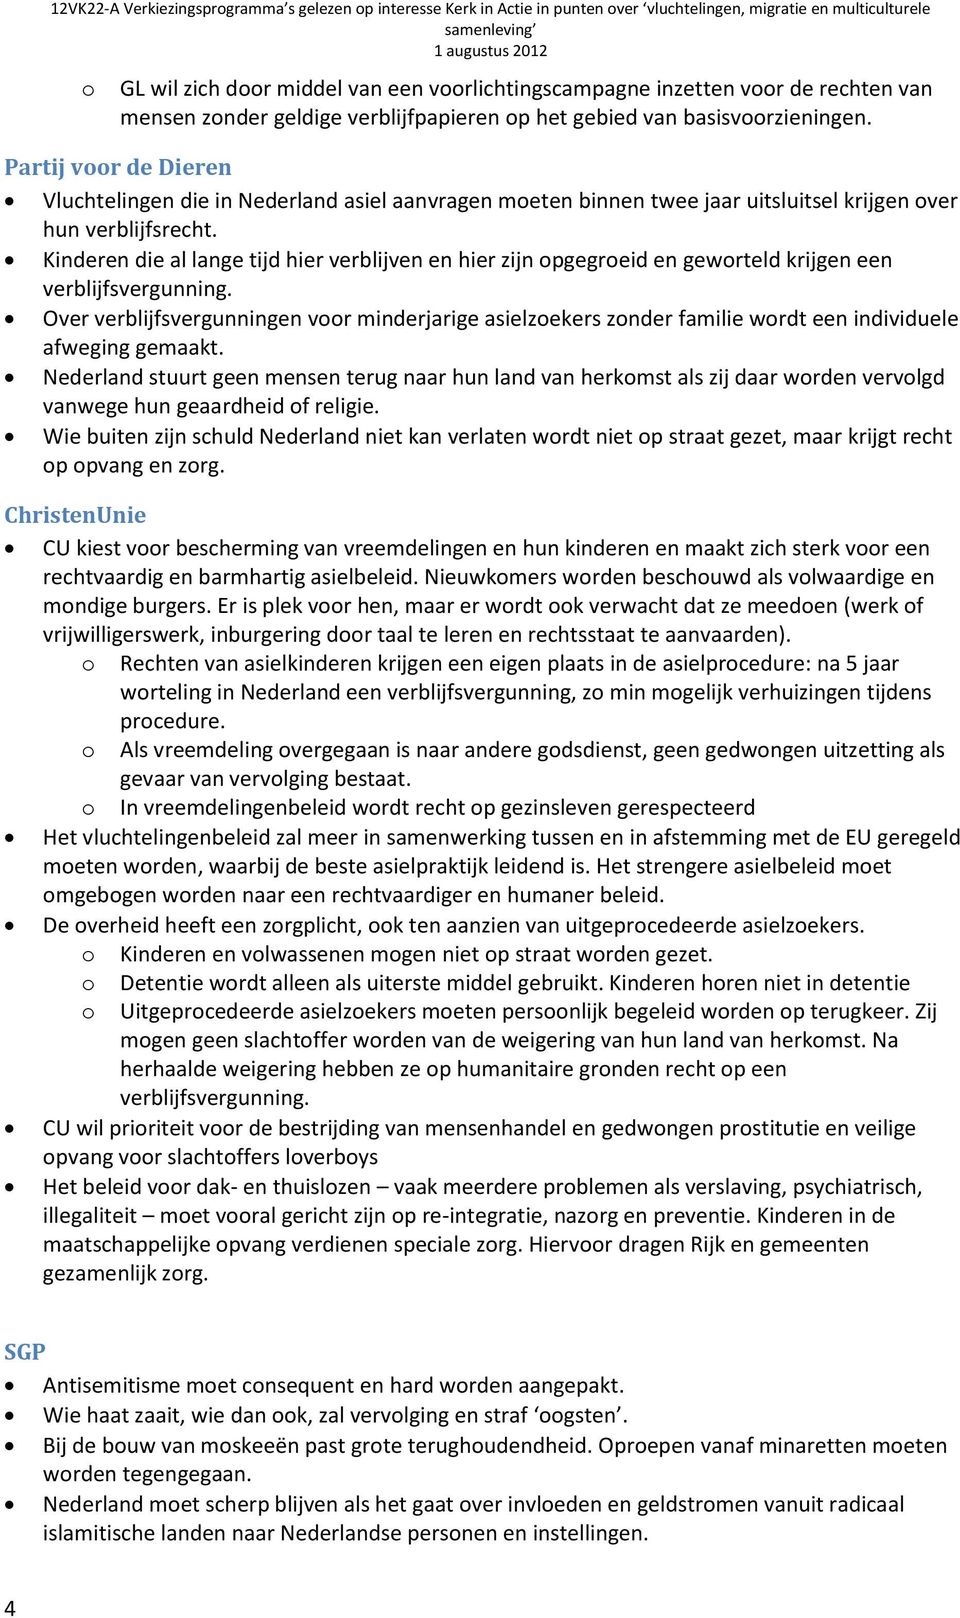 Partij vr de Dieren Vluchtelingen die in Nederland asiel aanvragen meten binnen twee jaar uitsluitsel krijgen ver hun verblijfsrecht.